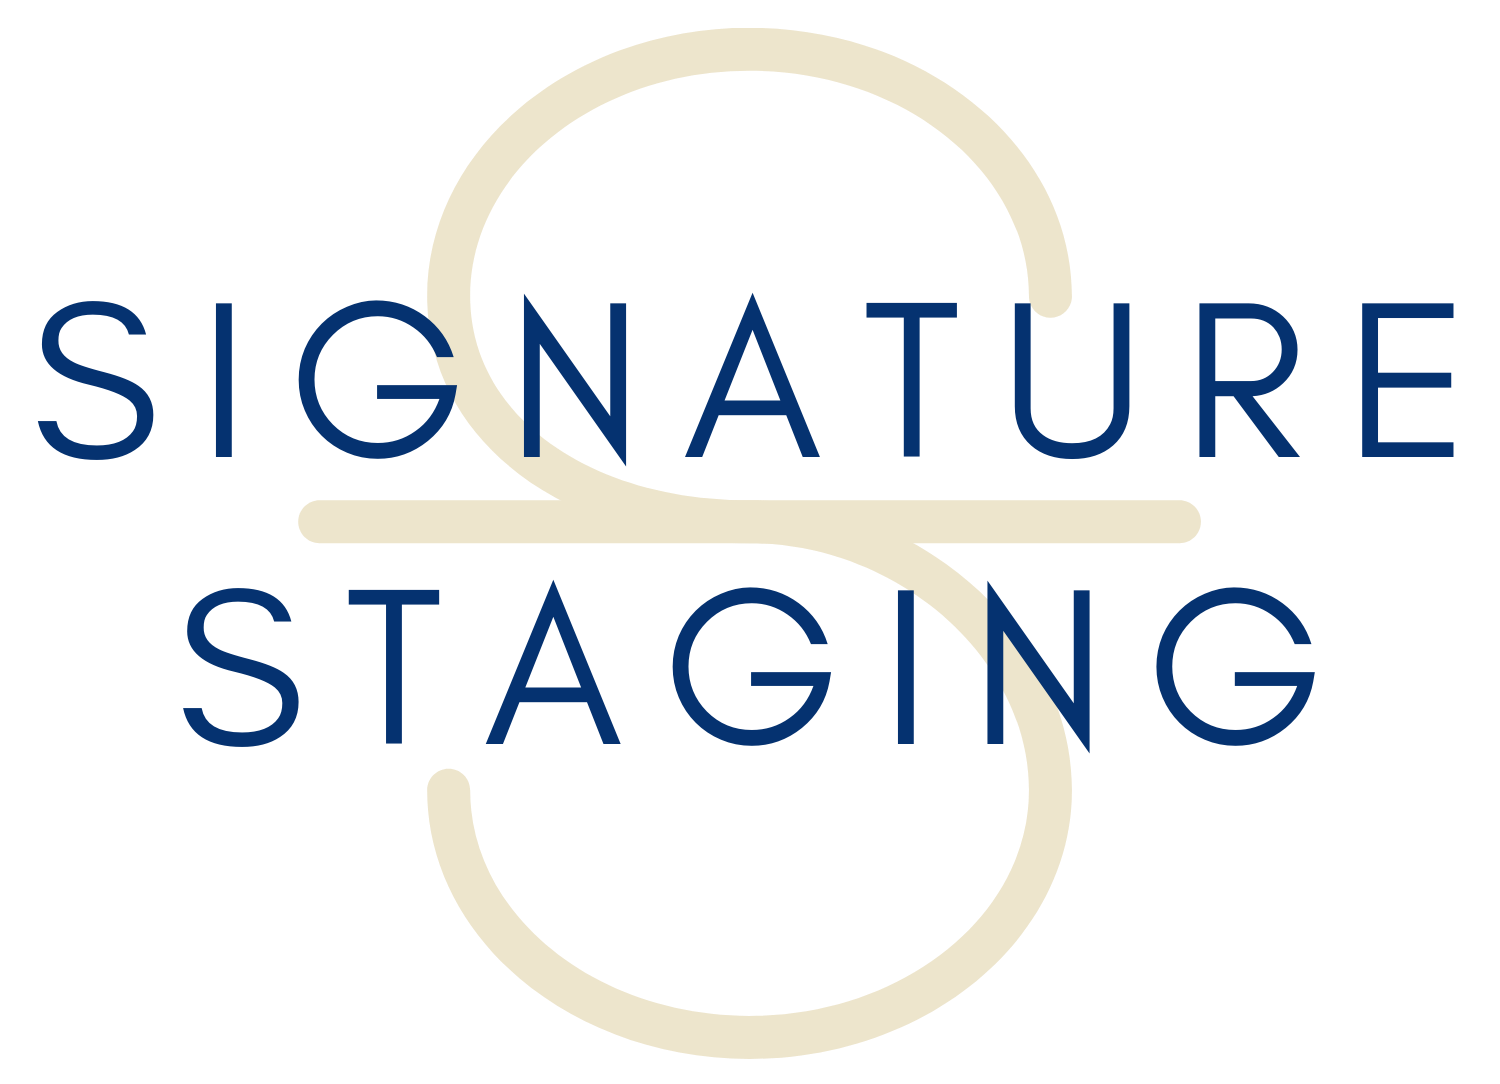 Signature Staging